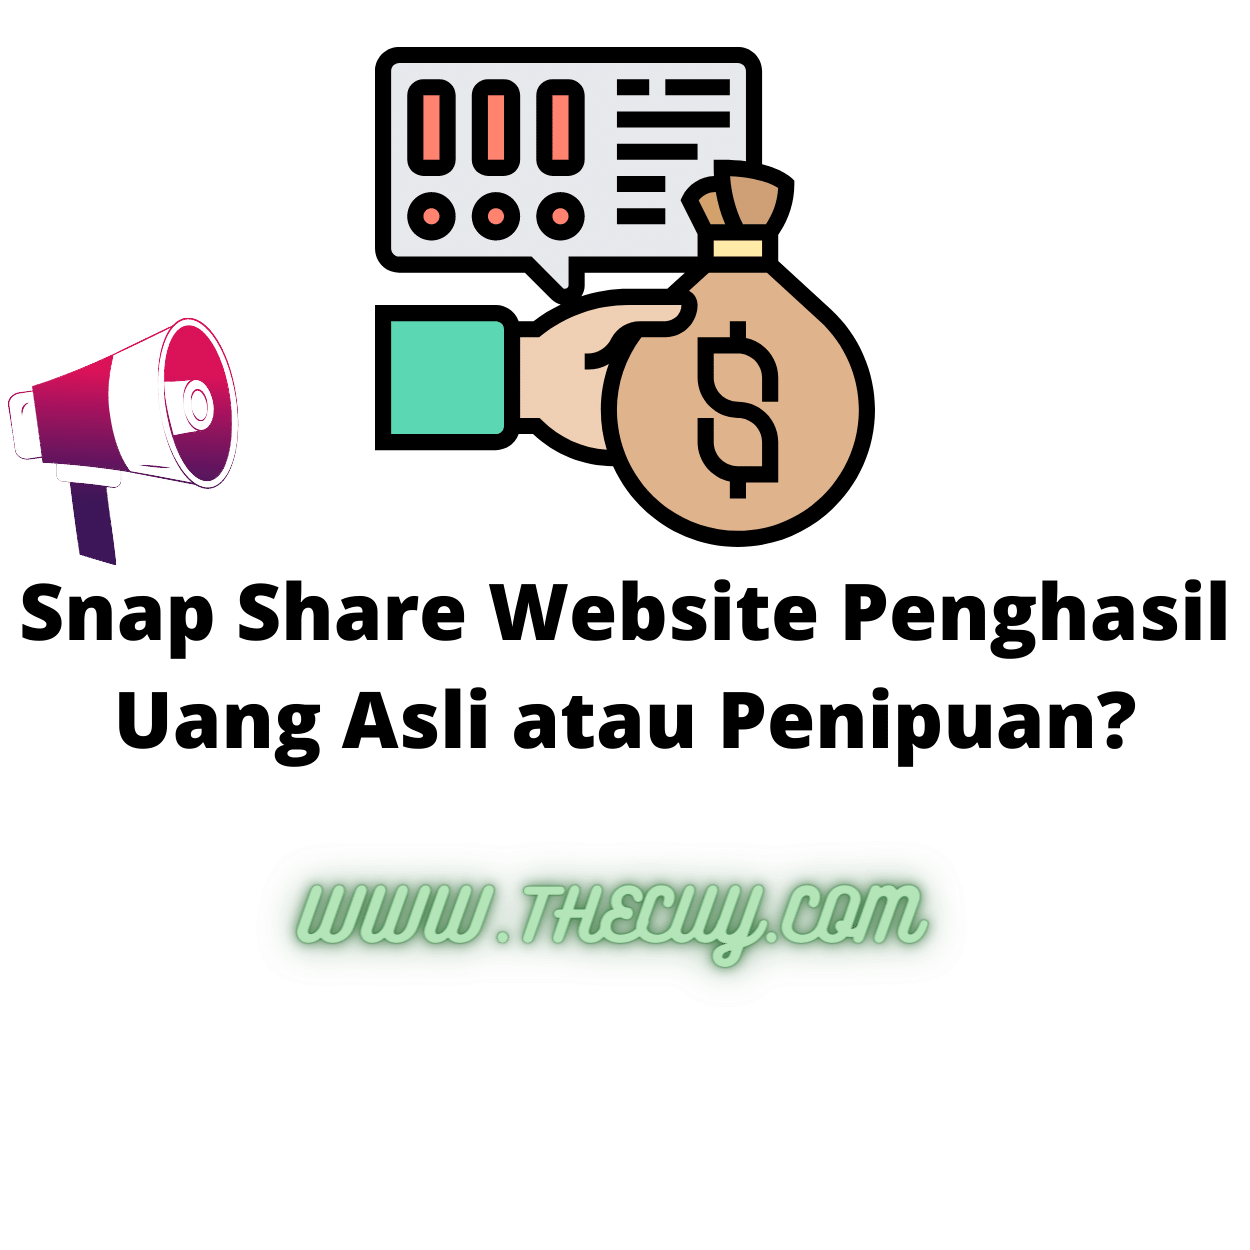 Snap Share Website Penghasil Uang Asli atau Penipuan?